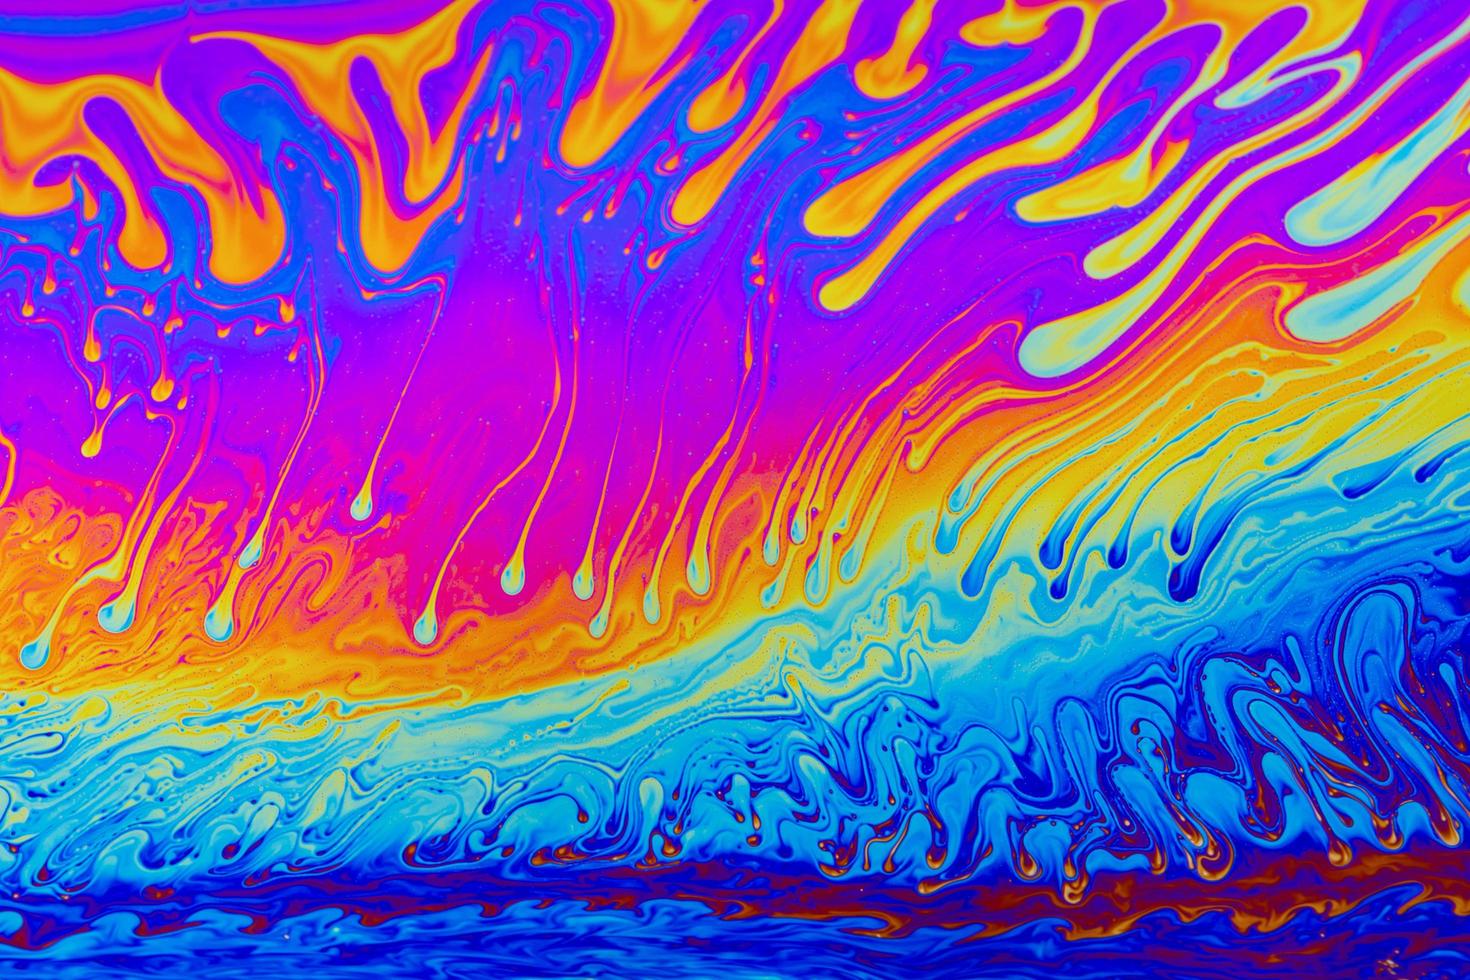 regenboog kleuren. psychedelische multi gekleurde patronen achtergrond. foto macro shot van zeepbellen